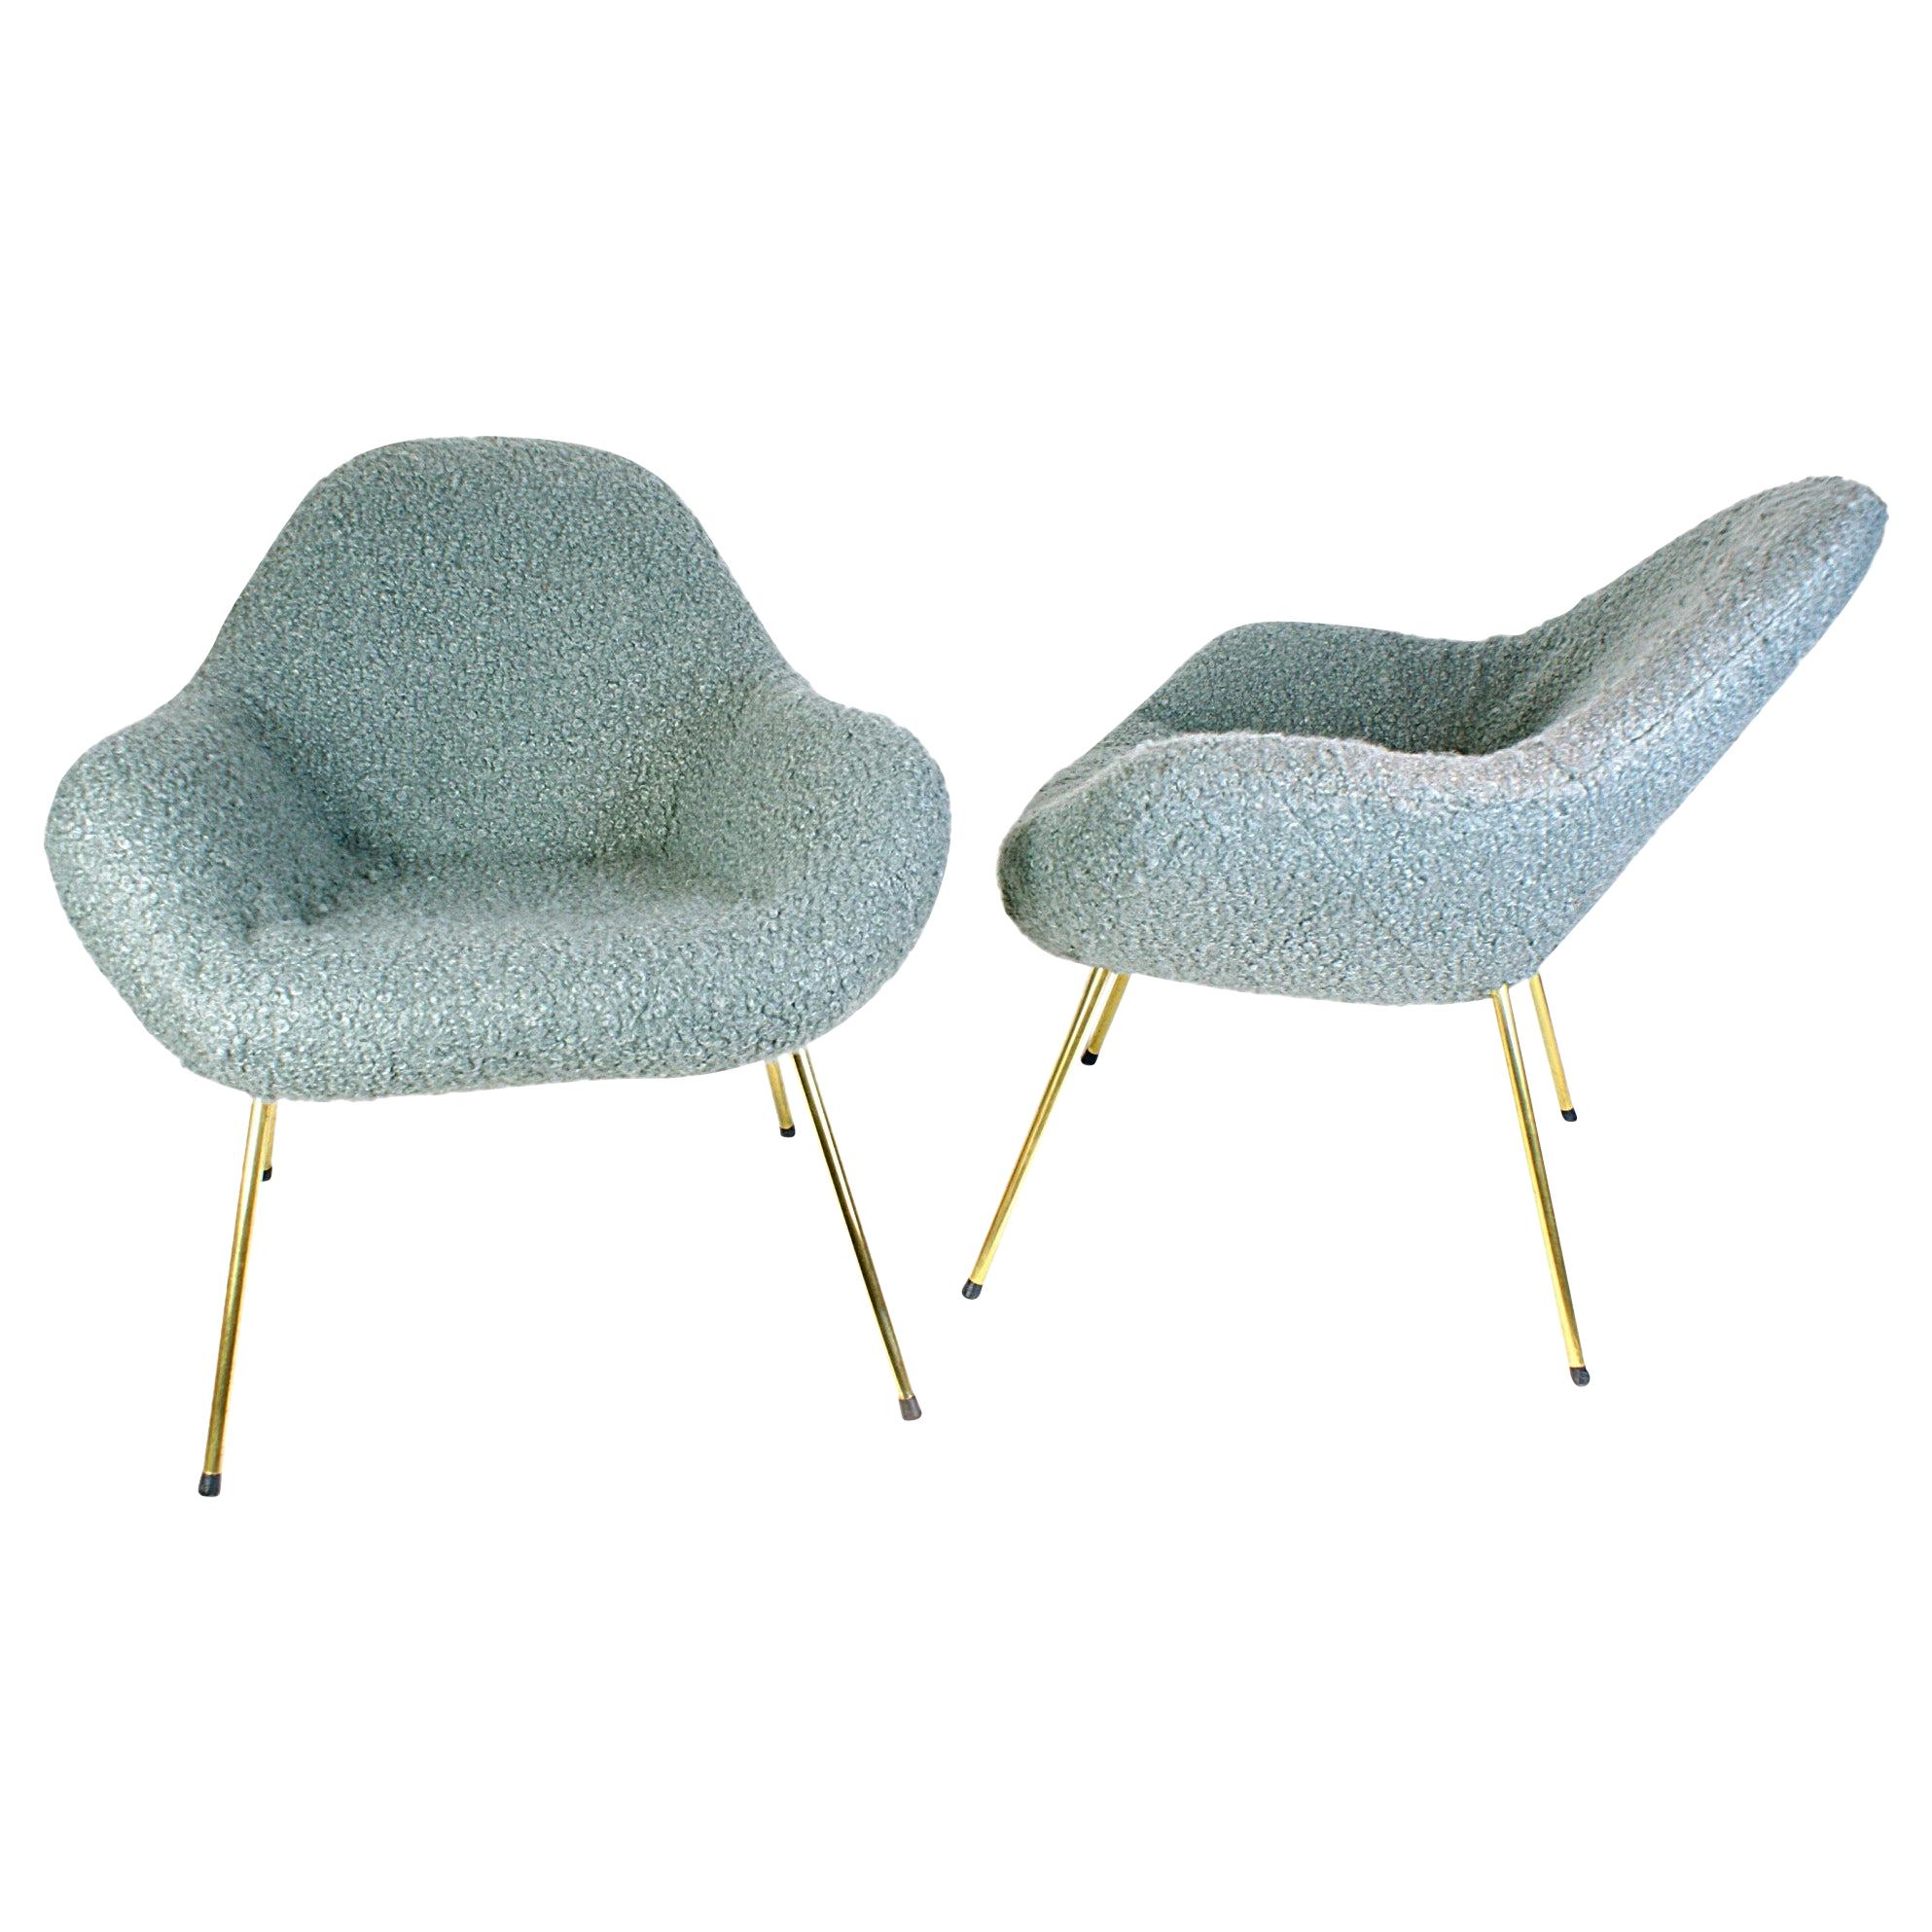 Zeitlose Ball-Loungesessel aus den 1960er Jahren, entworfen von Fritz Neth. Die Stühle sind von unserer Polsterei frisch restauriert worden. Neuer Schaumstoff und hochwertiges Schafwollmischgewebe in Hellgrau, das einen schönen Kontrast zu den